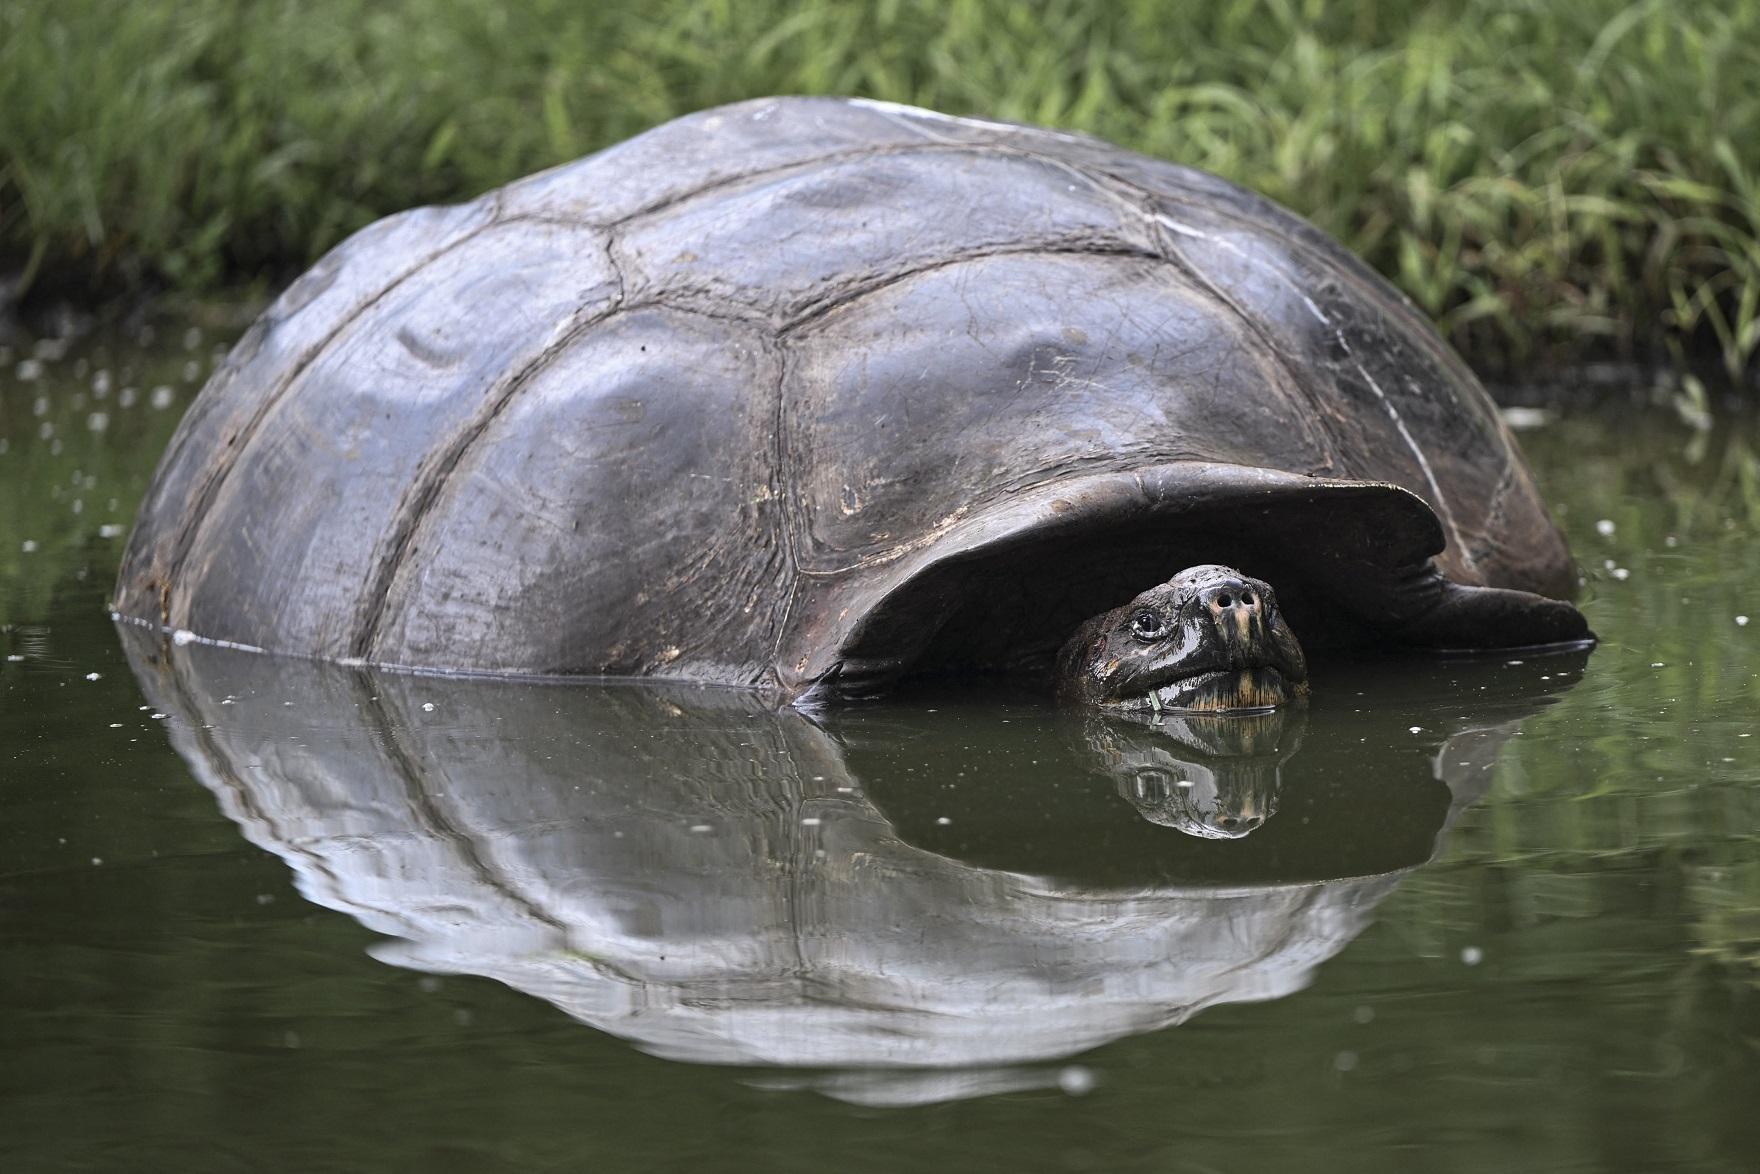 Les fortes pluies pourraient affecter les populations de tortues, comme cette torture géante des Galapagos, car leurs nids seraient inondés [AFP - ERNESTO BENAVIDES]